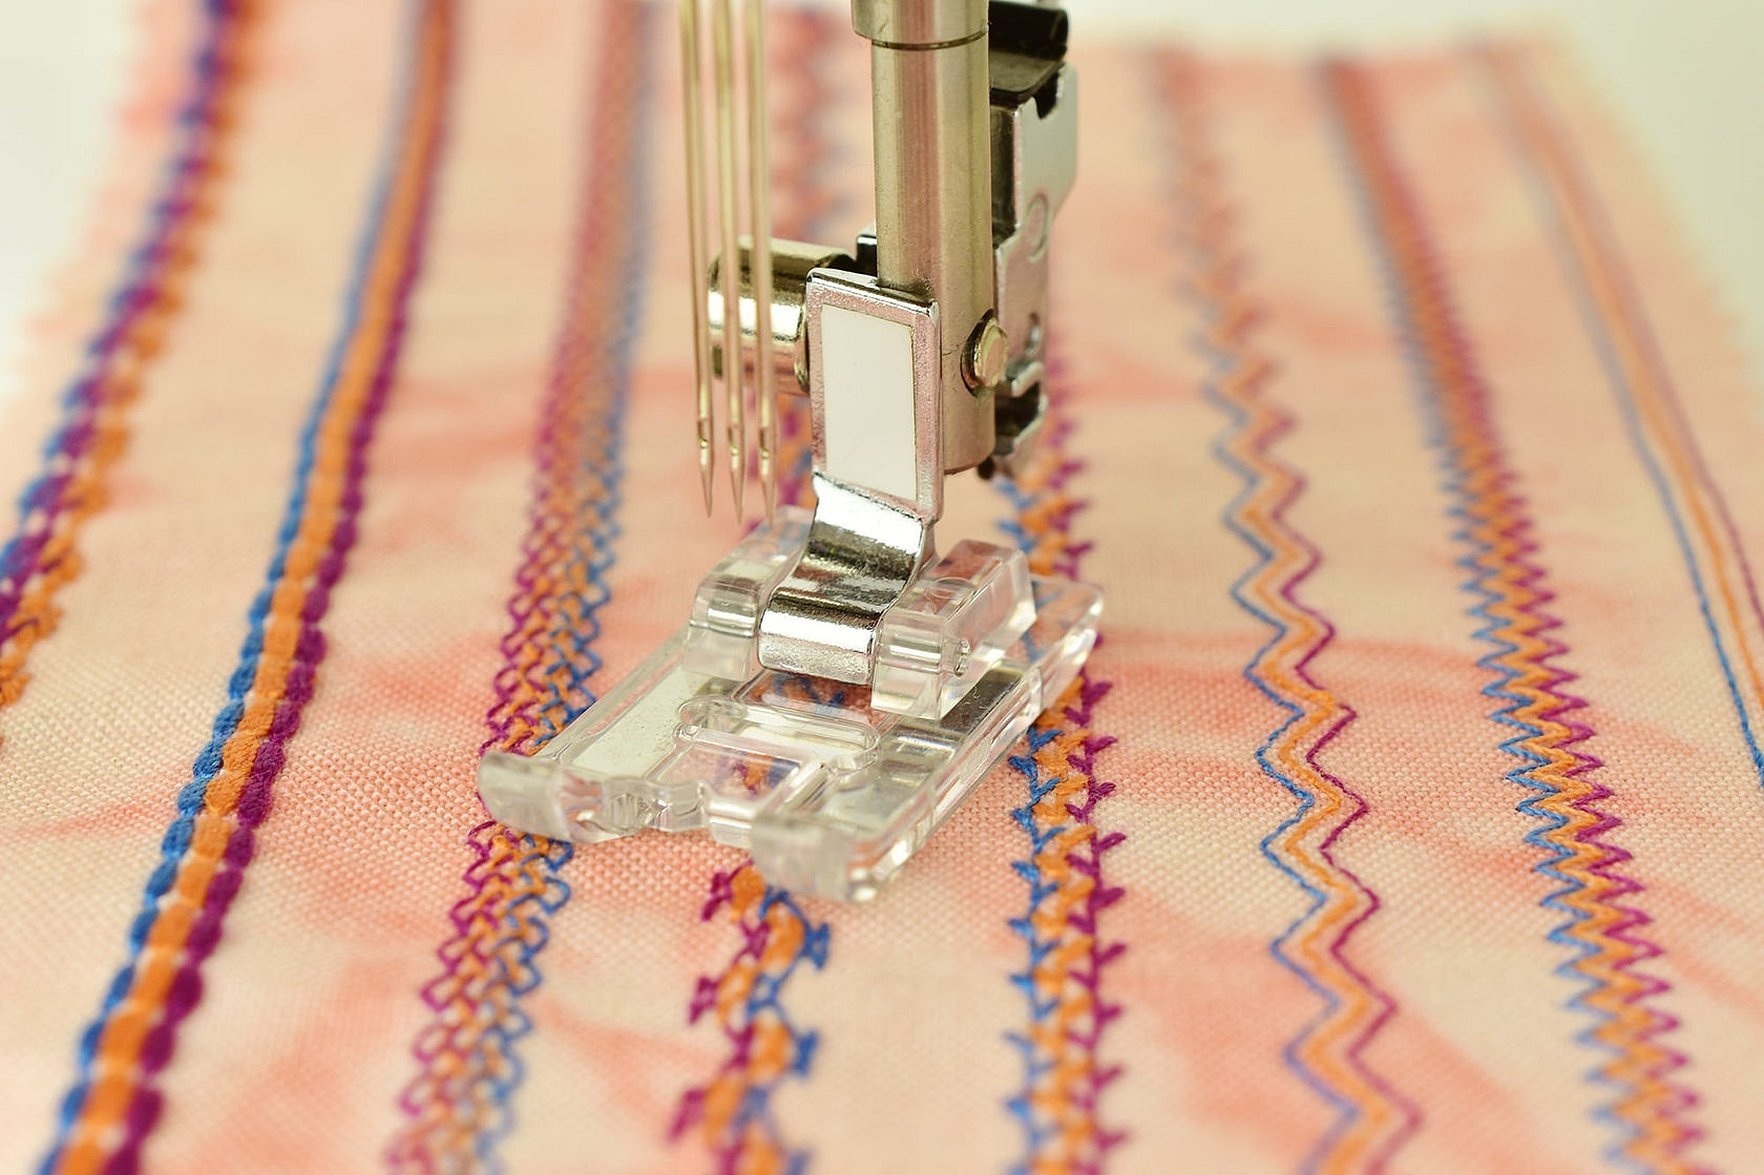 Как пользоваться лапками для швейных машин